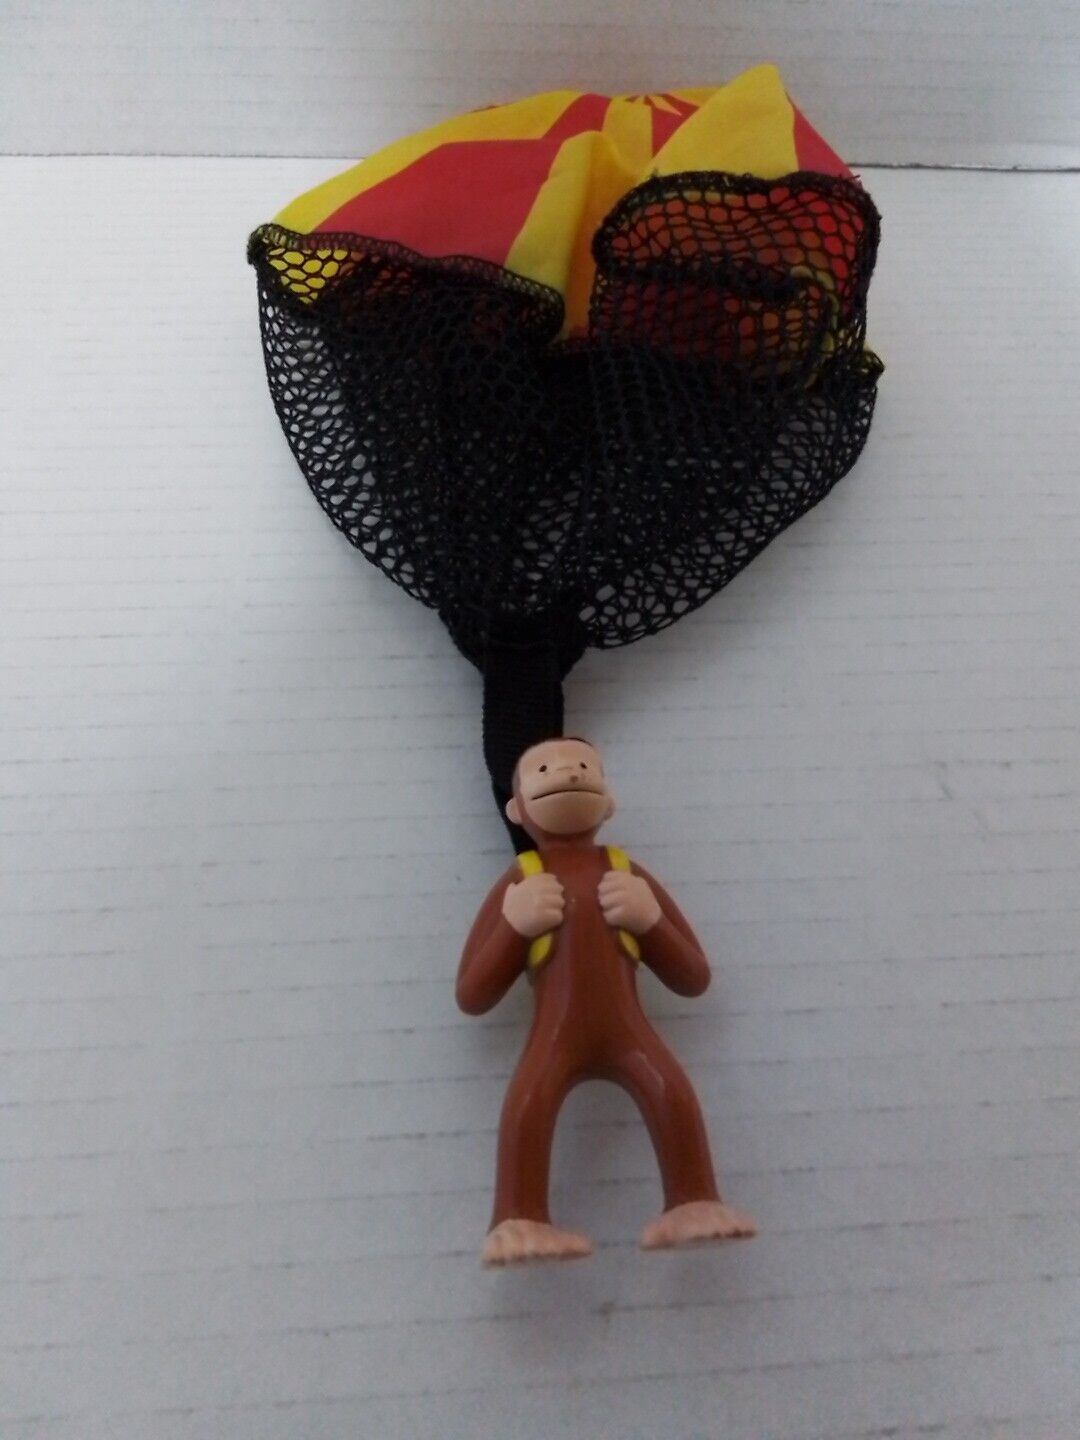 Vintage Curious George Parachutist Parachute Toy